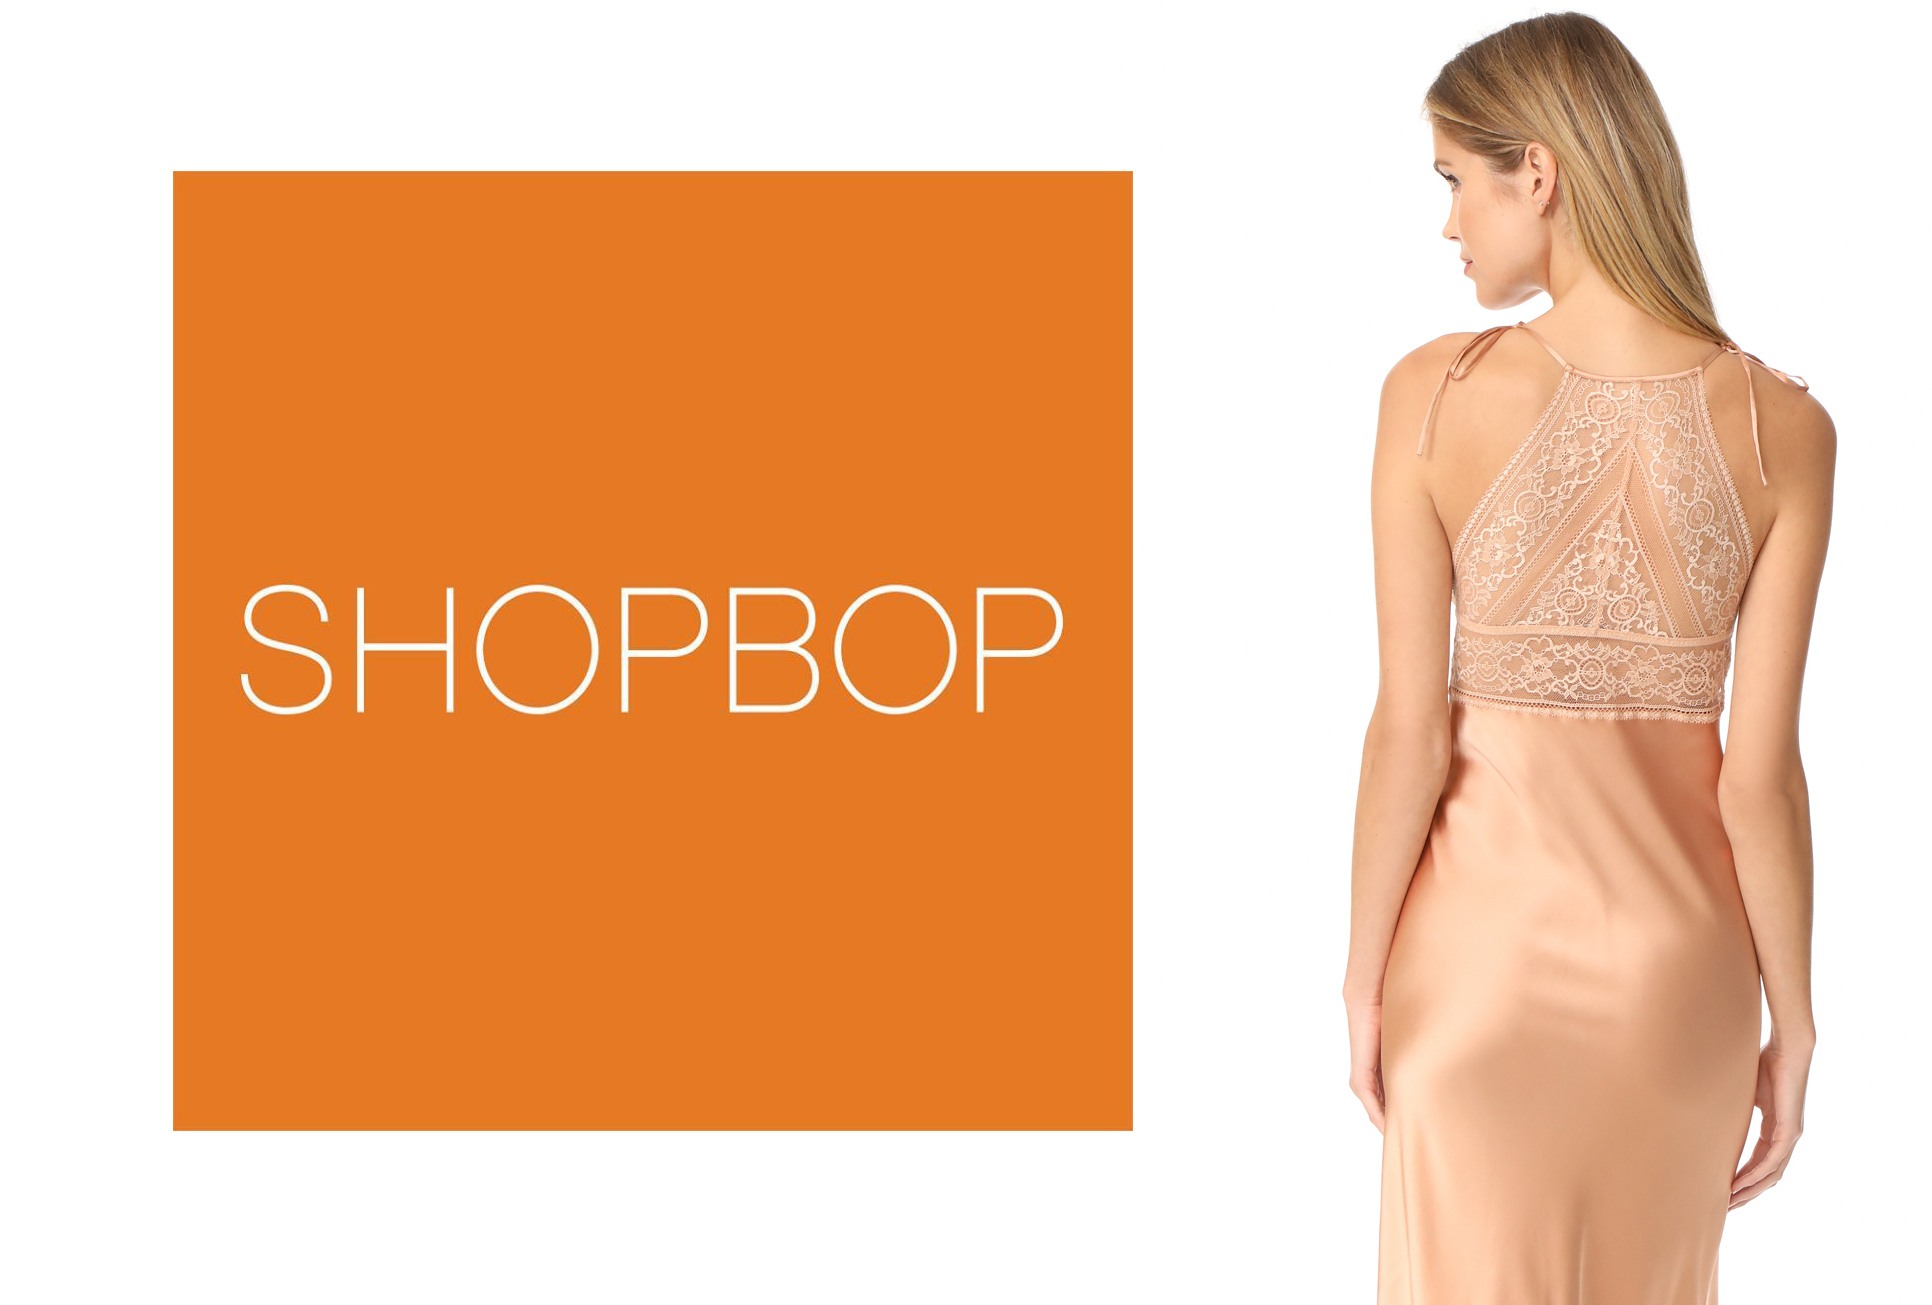 Обзор интернет-магазина Shopbop в журнале о нижнем белье, стиле и шоппинге GB {Garterblog.ru}